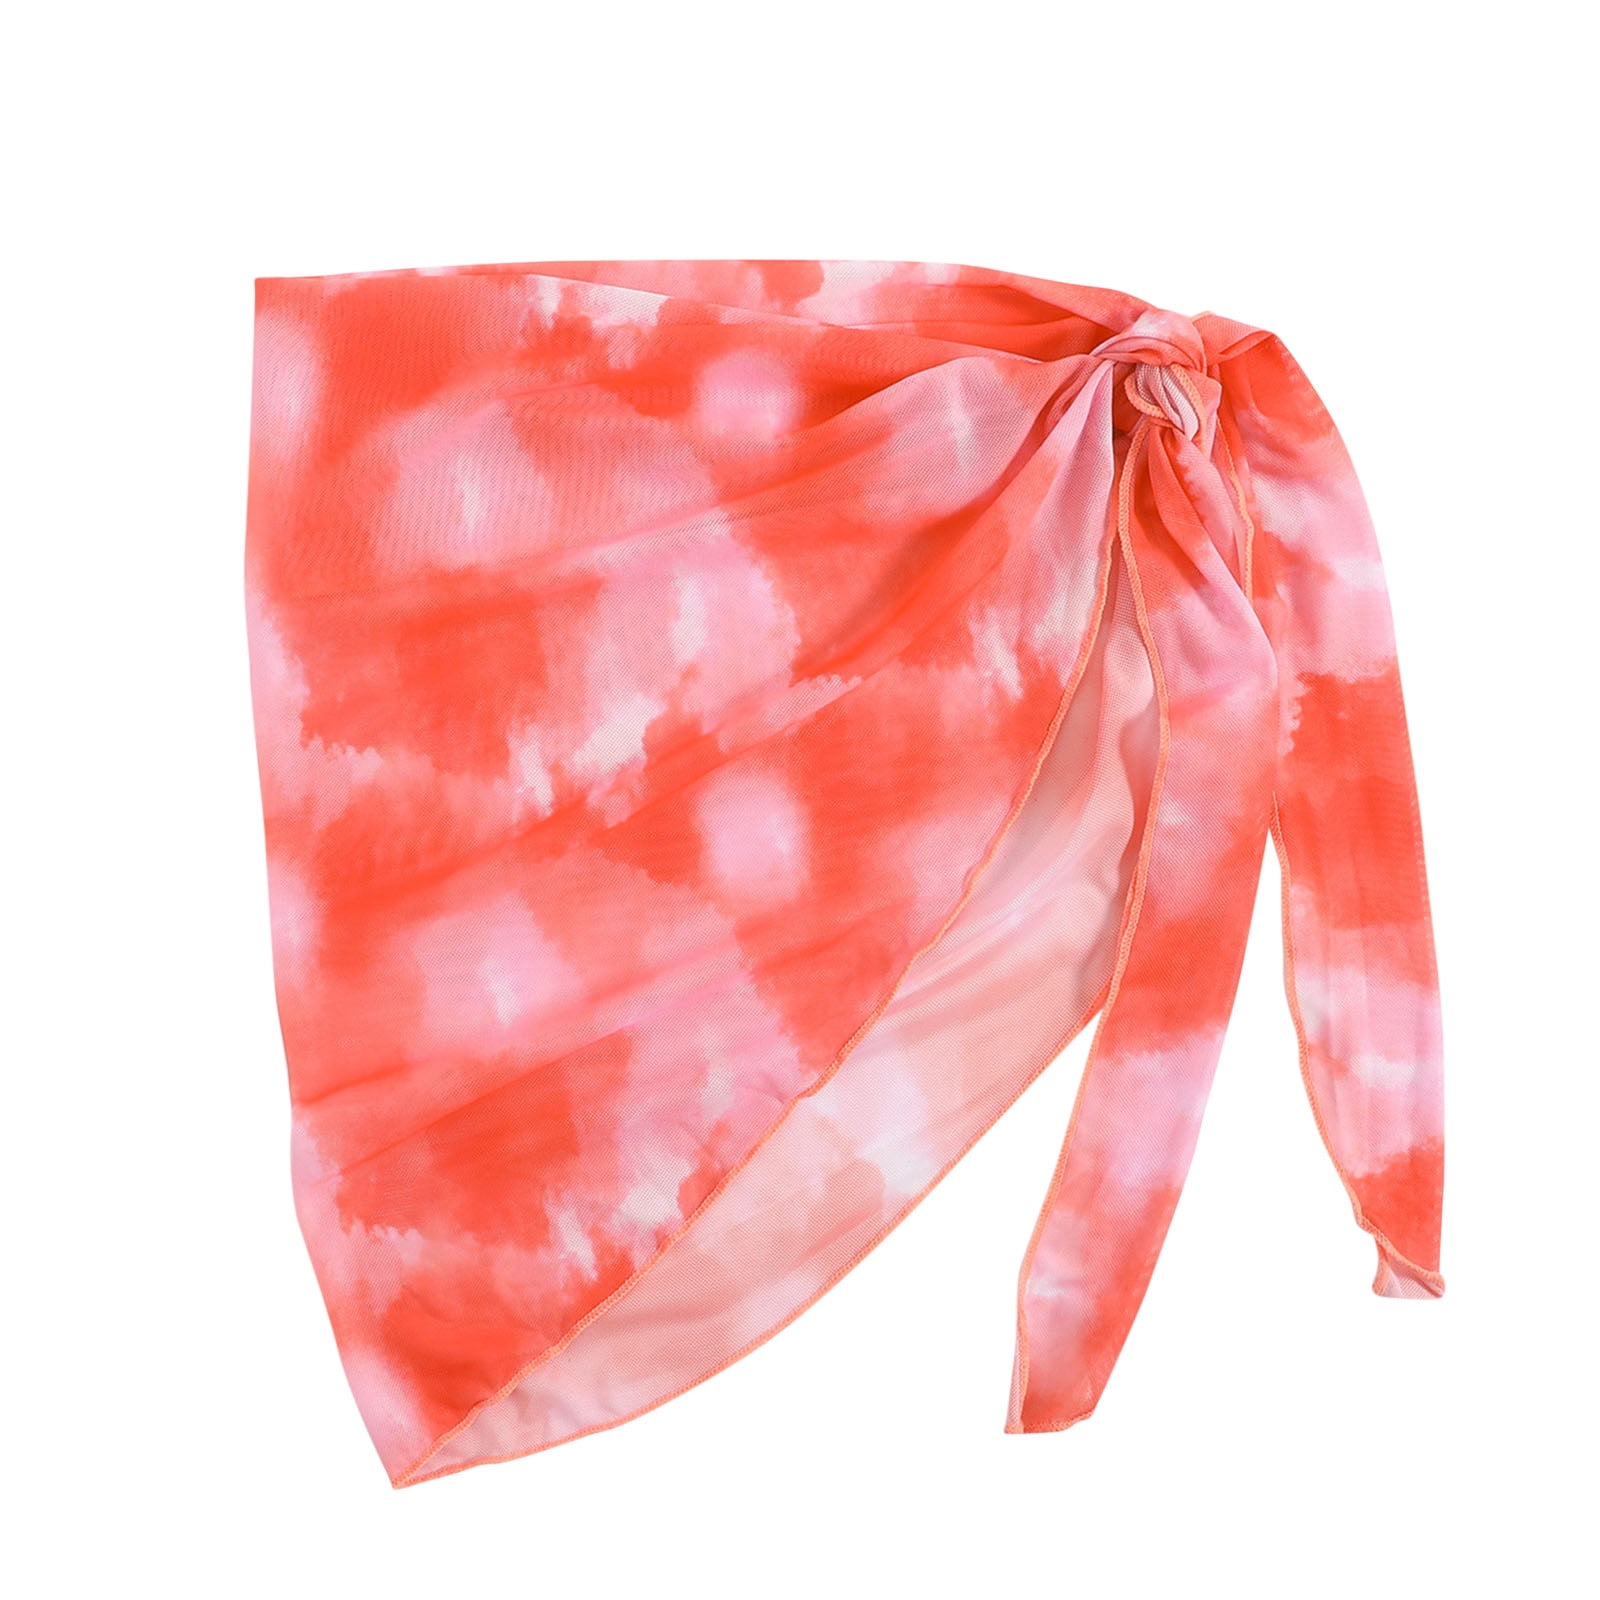 Zrbywb Women 1 Piece Sheer Wrap Knot Print Cover Up Skirt Without Bikini Beach Wrap Bikini Shiny 